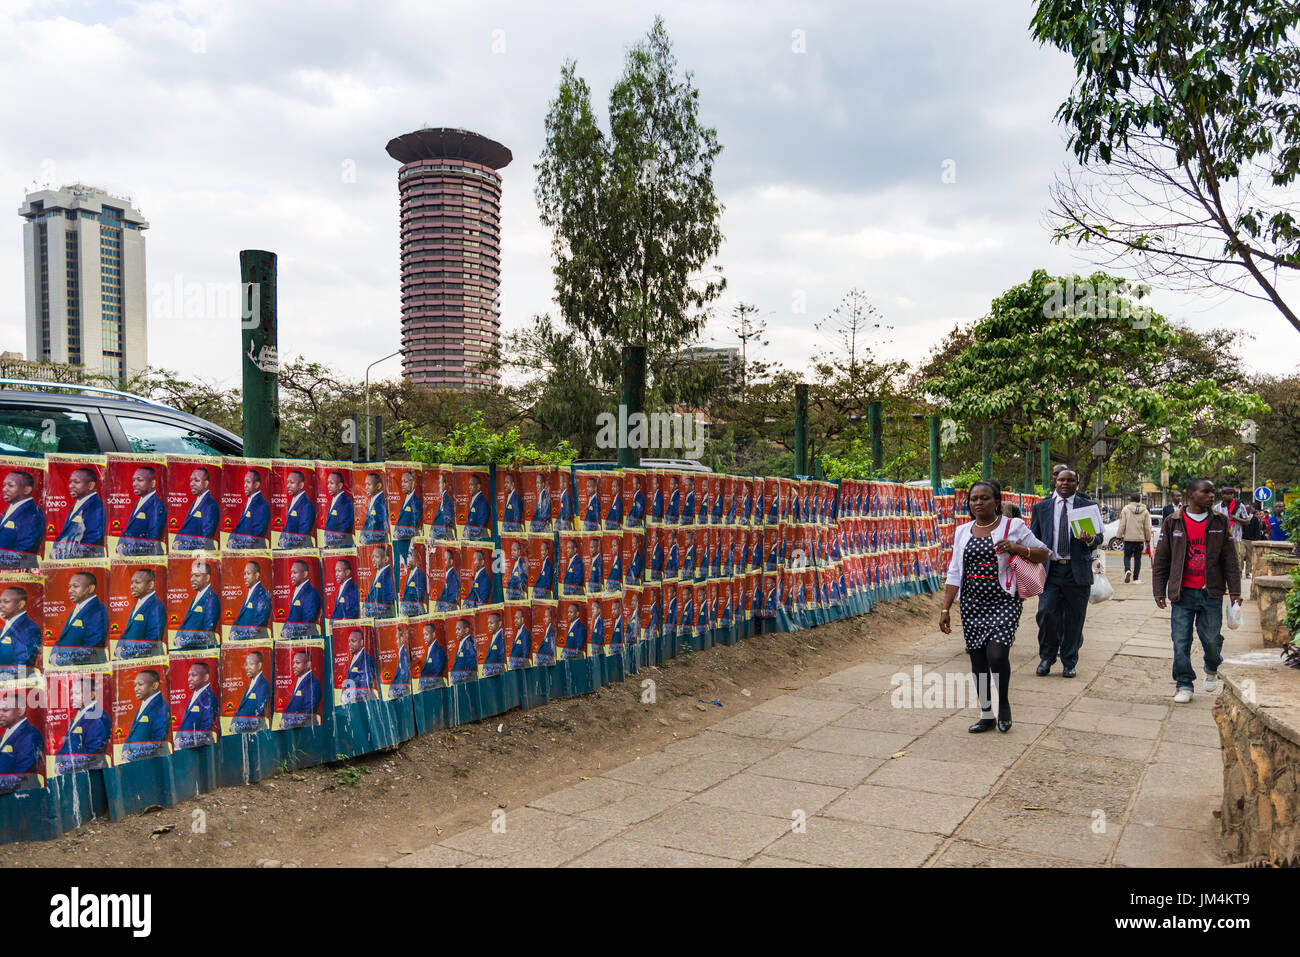 Menschen zu Fuß letzten Kenianischen Wahlkandidaten Poster an der Wand in Nairobi City mit Kenyatta International Convention Center im Hintergrund, Kenia Stockfoto